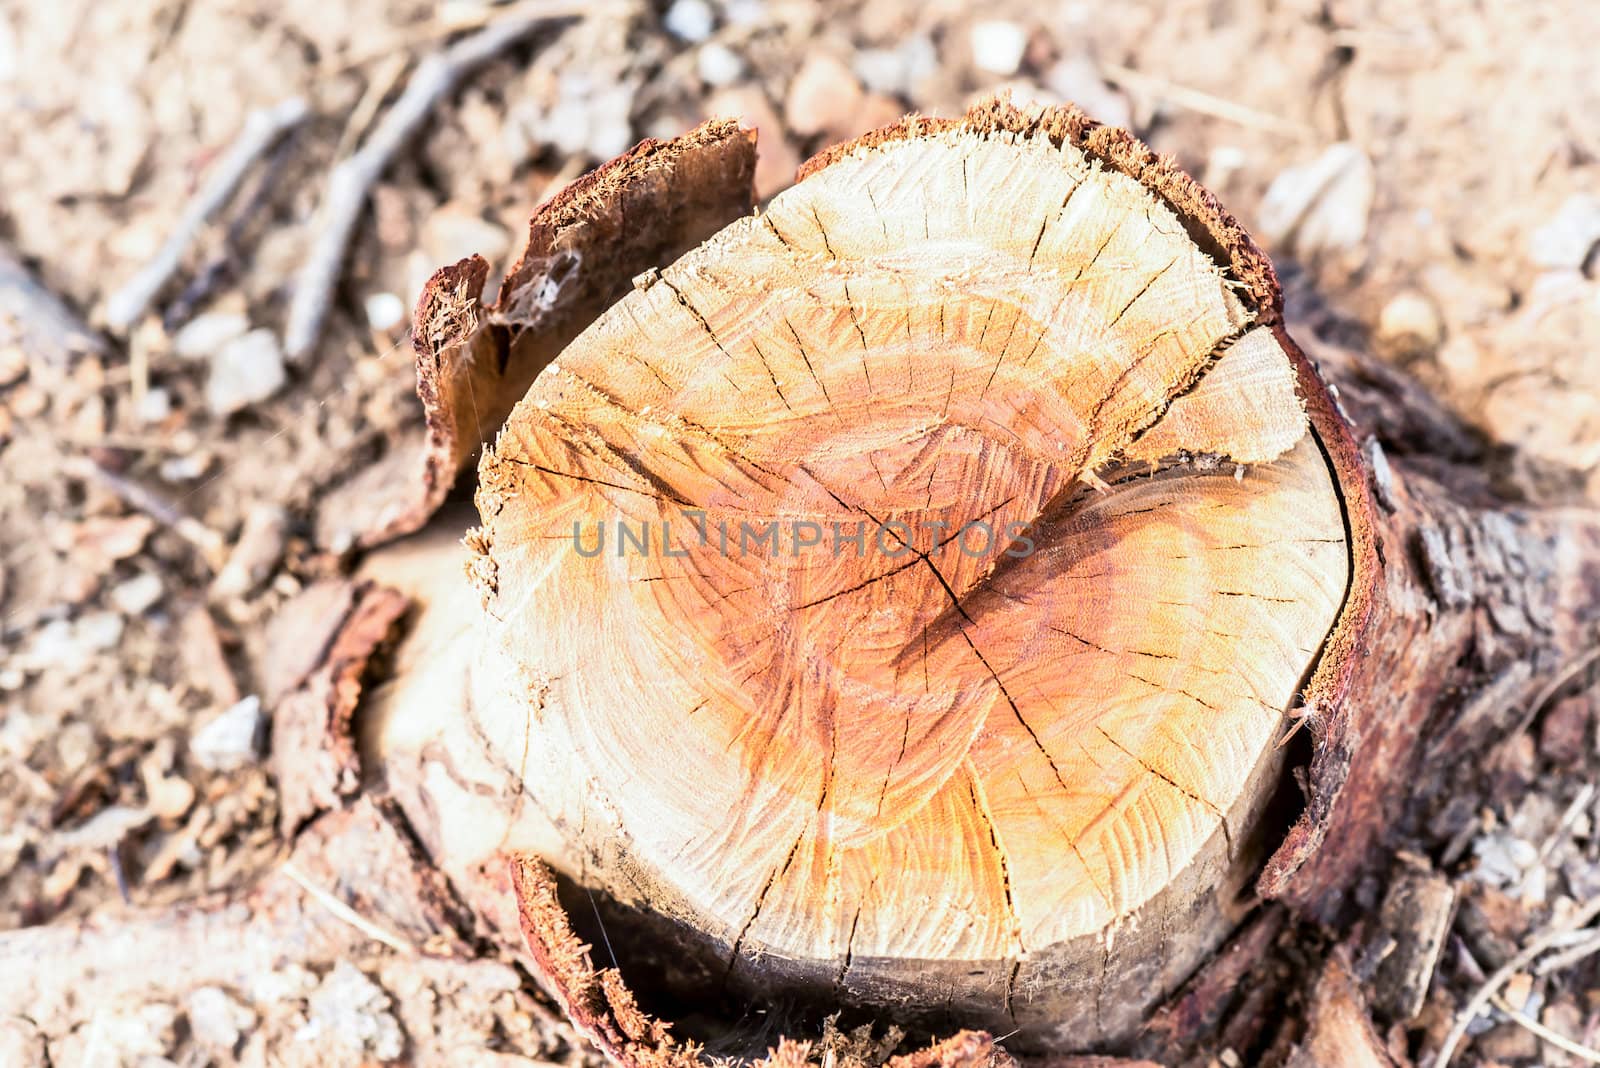 Stump of a cut tree